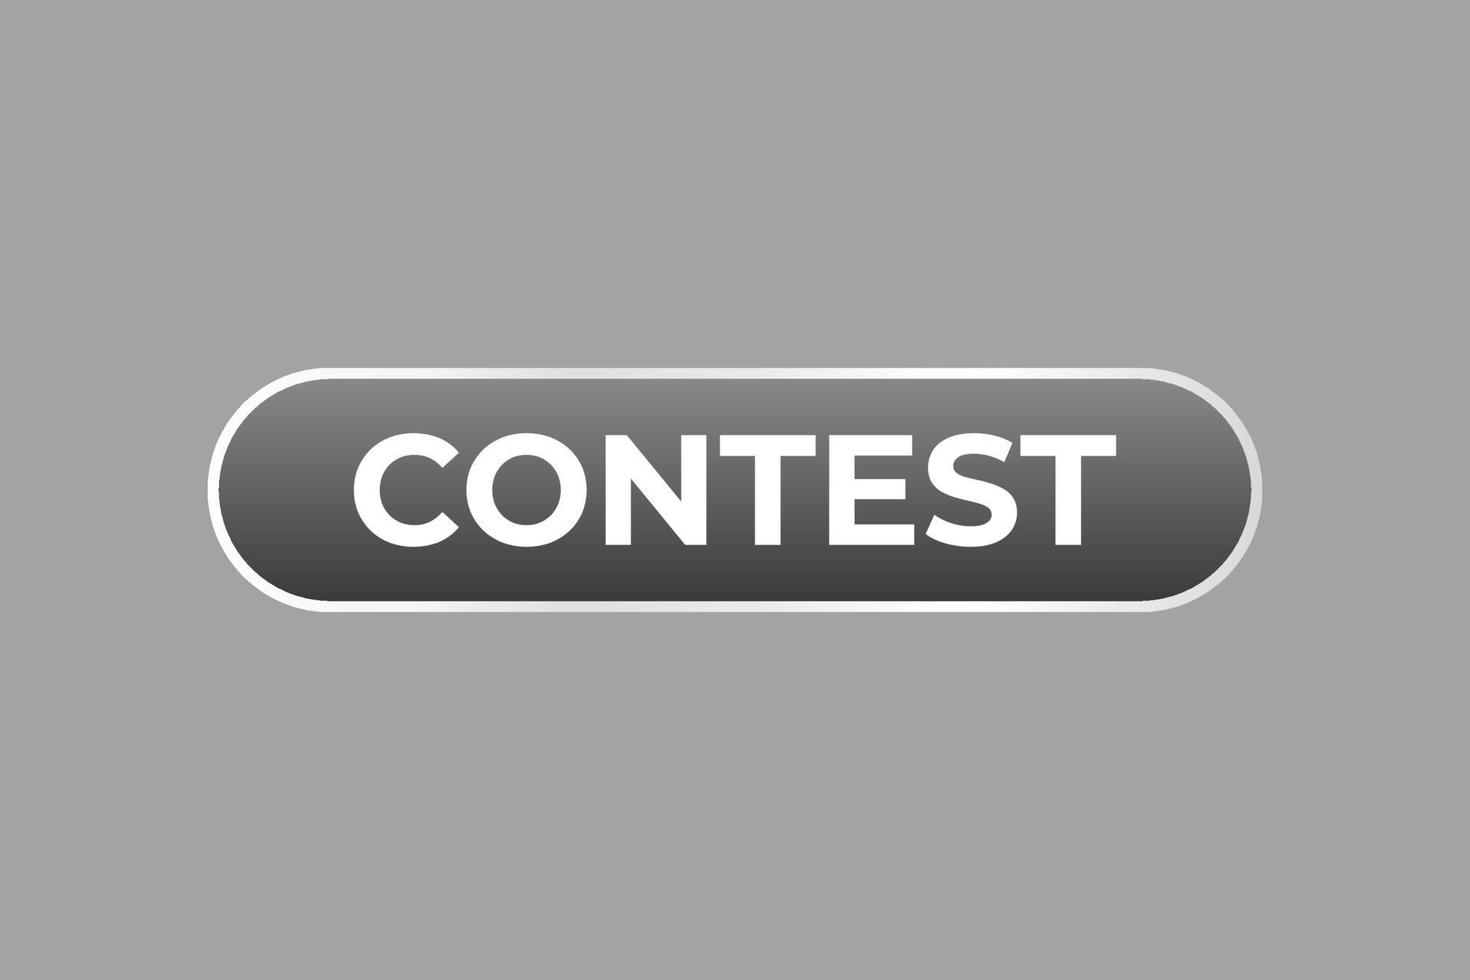 Contest Button. Speech Bubble, Banner Label Contest vector